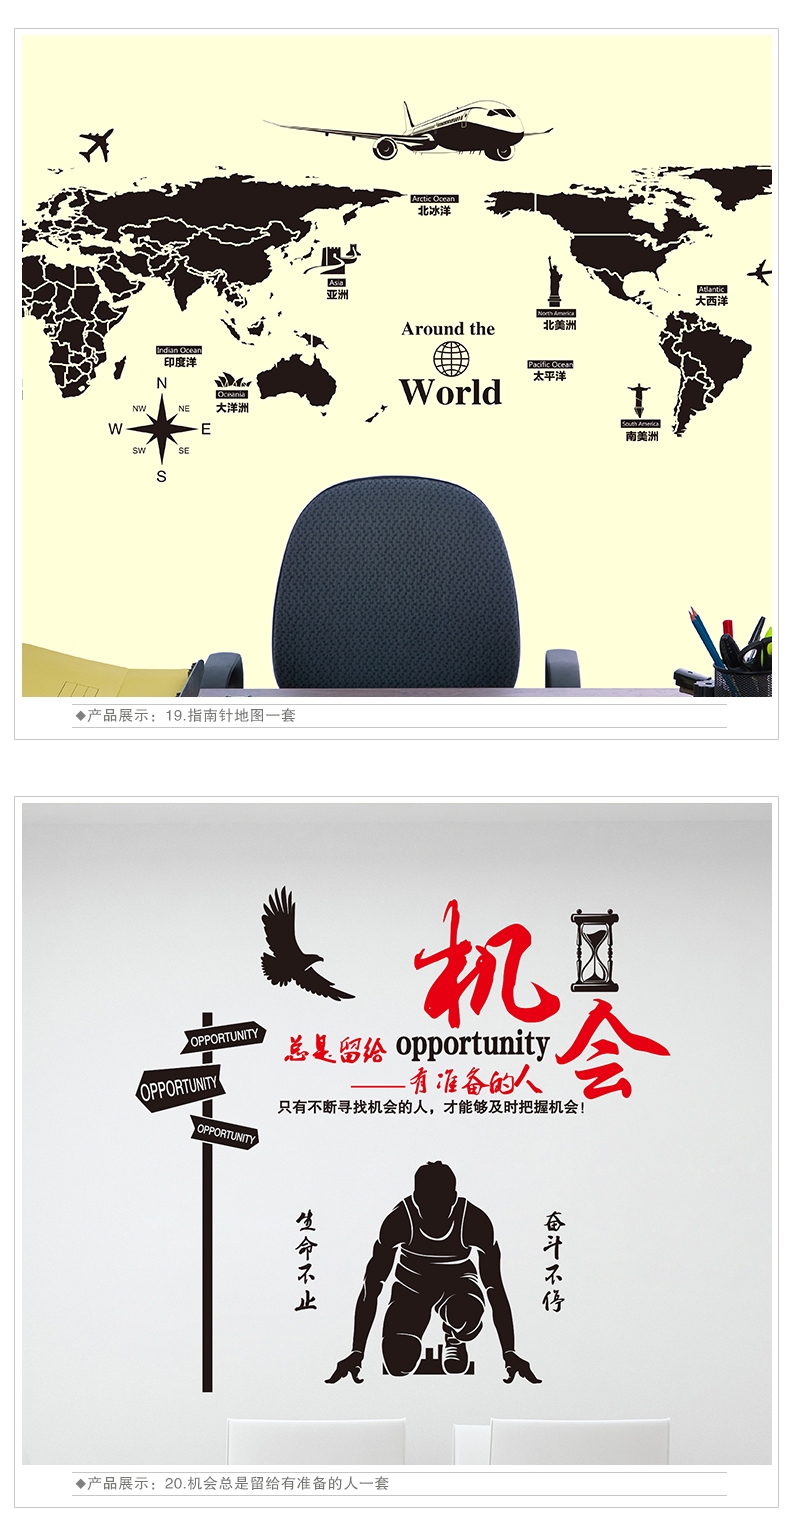 布置辅导班装饰文化标语墙壁学习贴画励志海报墙贴纸17中国地图特大